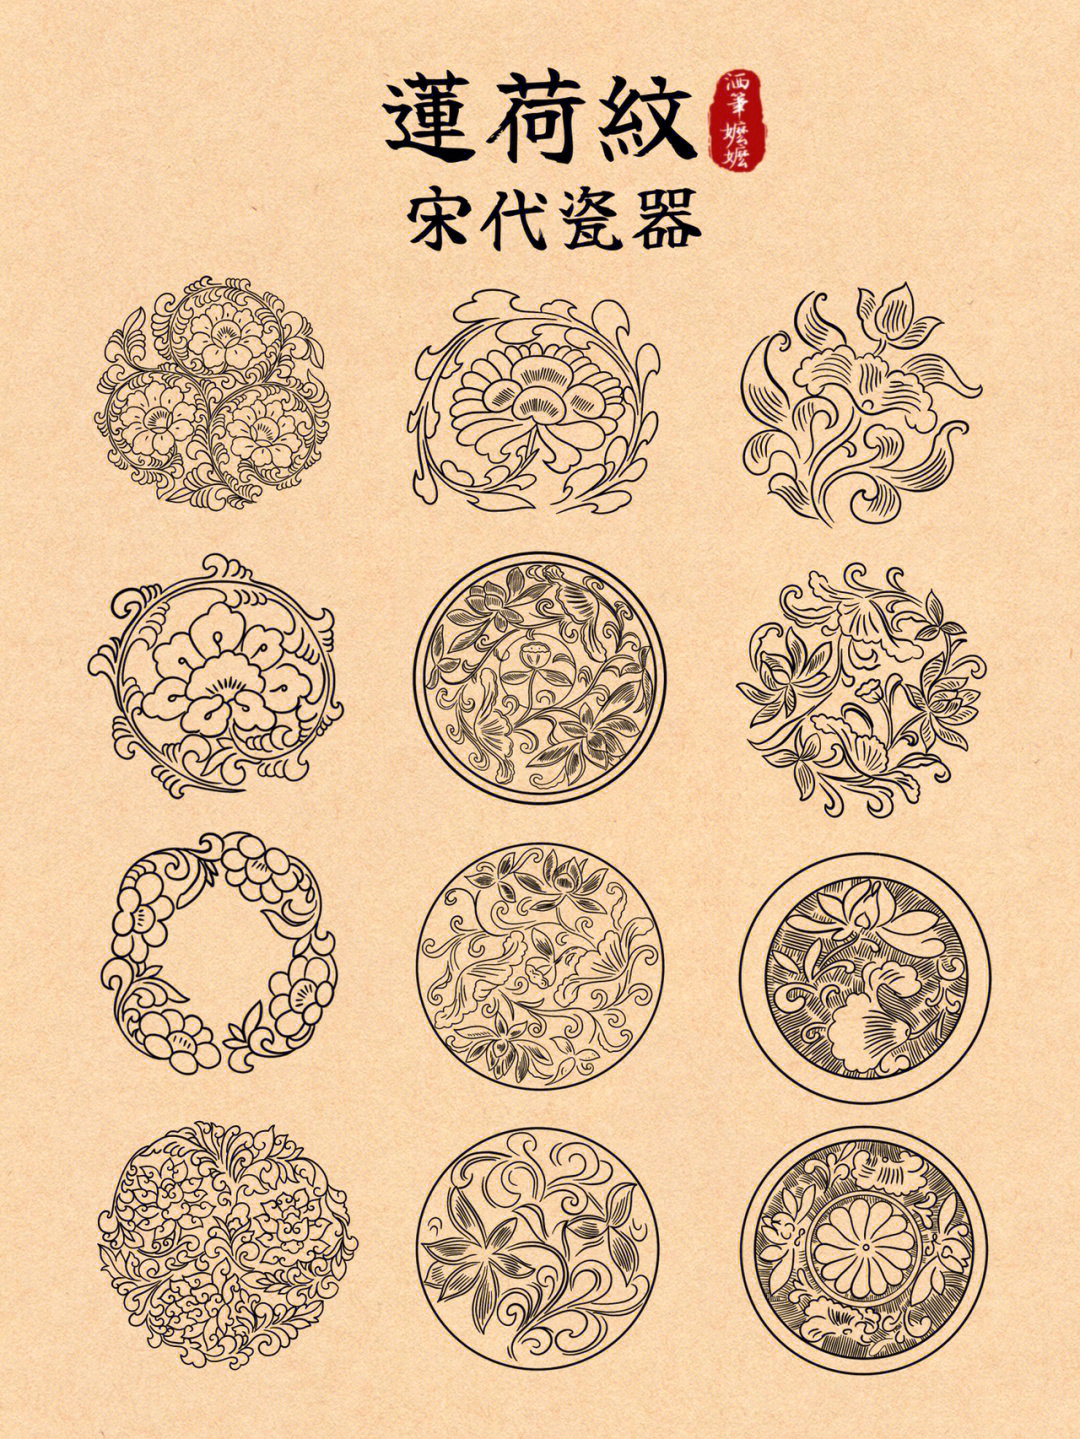 中国传统纹样临摹莲荷纹